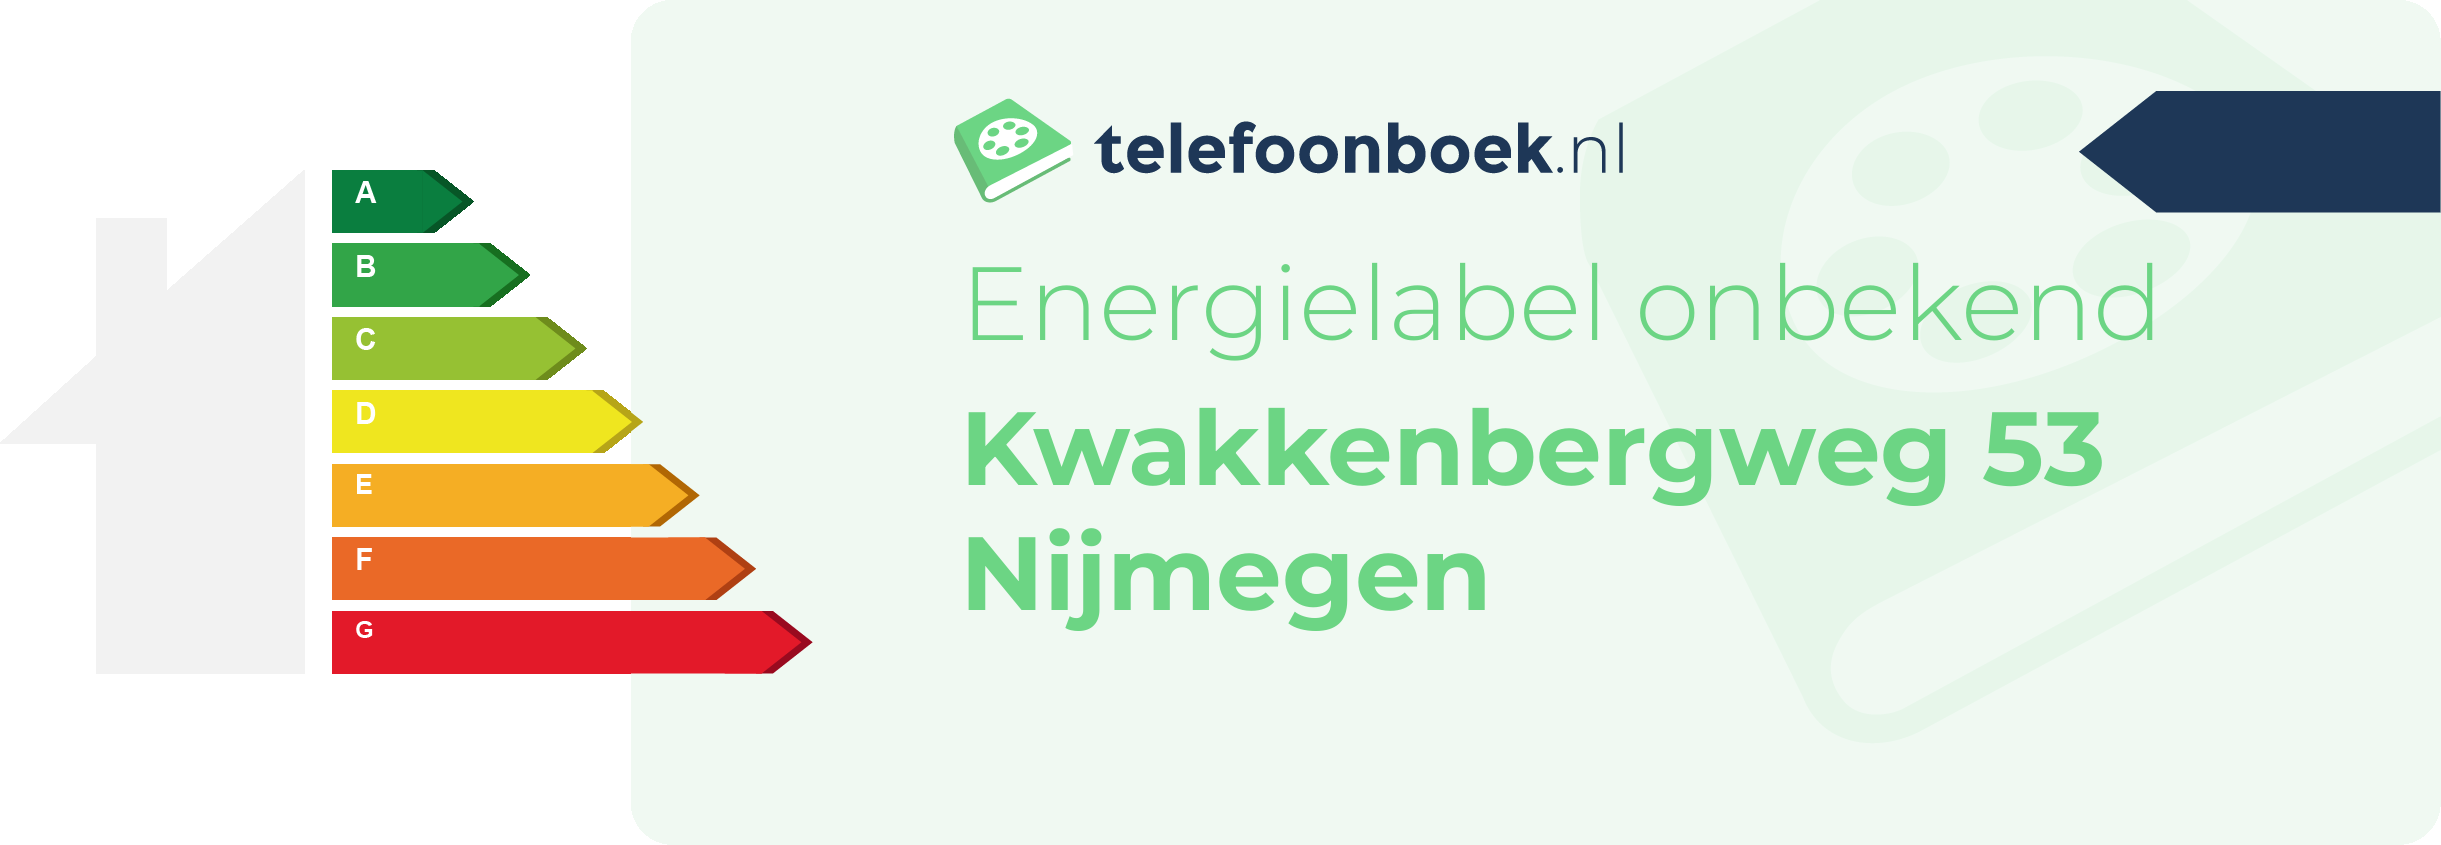 Energielabel Kwakkenbergweg 53 Nijmegen